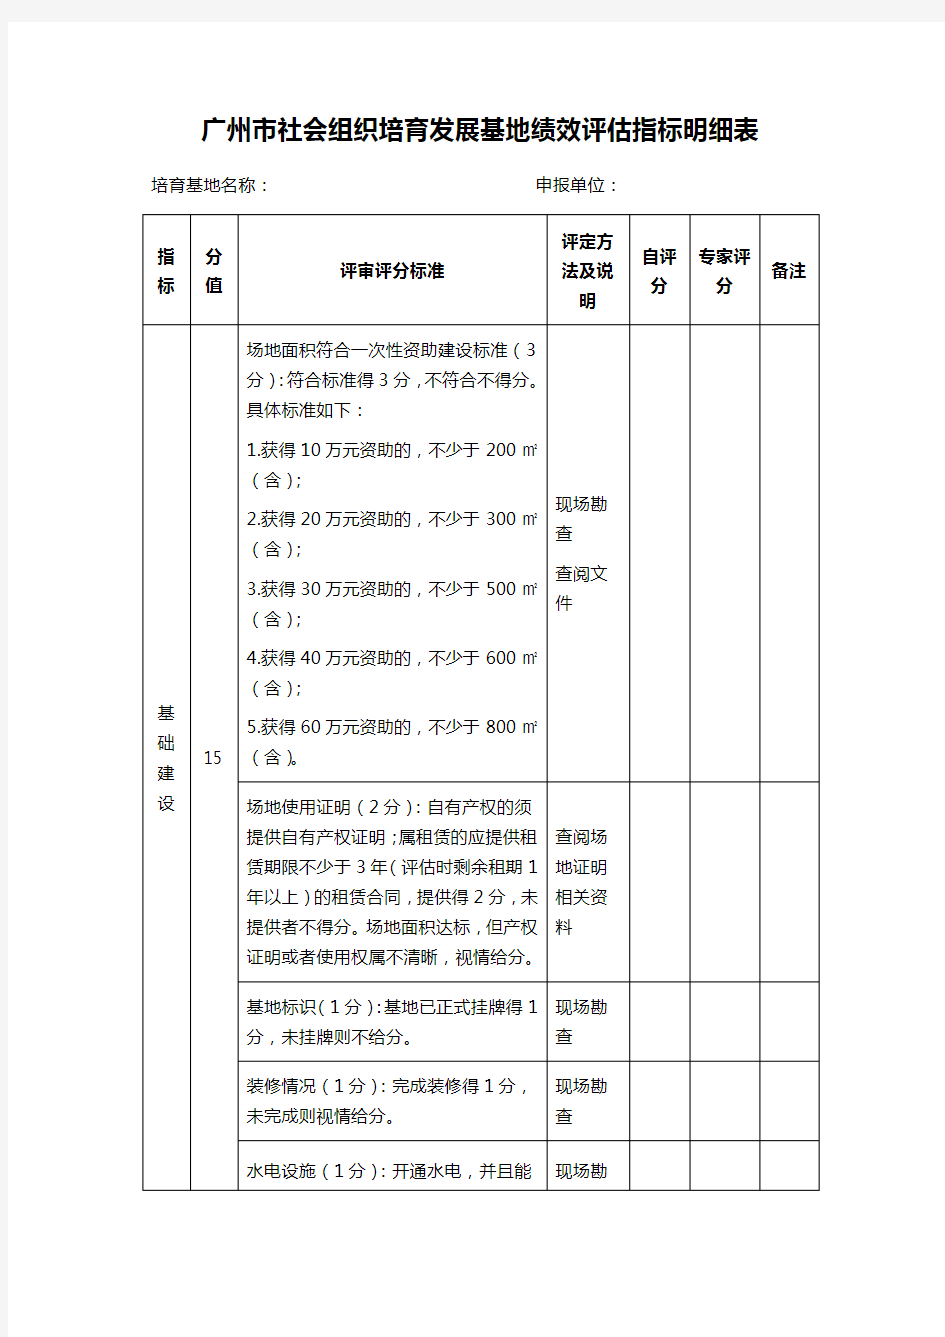 广州市社会组织培育发展基地绩效评估指标明细表